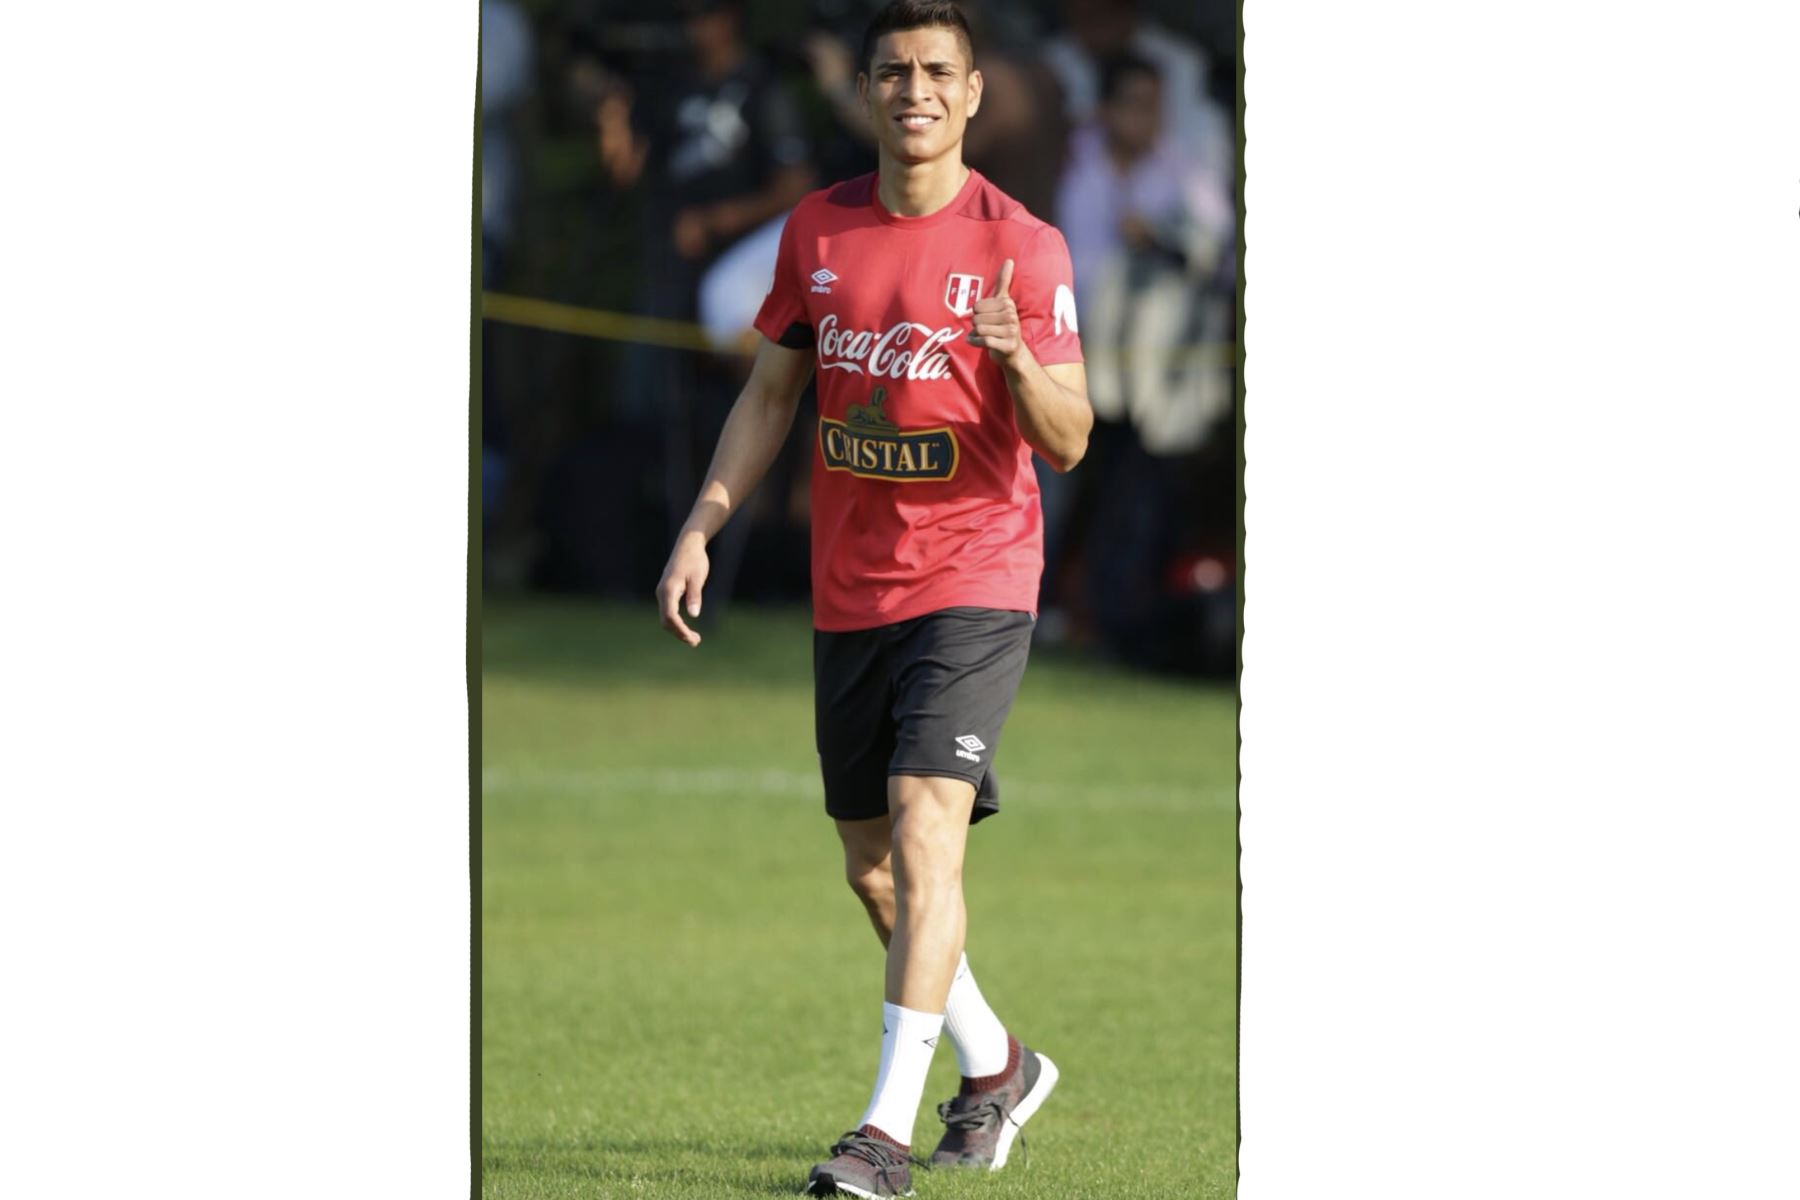 La selección peruana realizó su segundo entrenamiento en Fort Lauderdale, Miami, bajo las órdenes del técnico Ricardo Gareca. Foto: ANDINA/Twiter FPF.